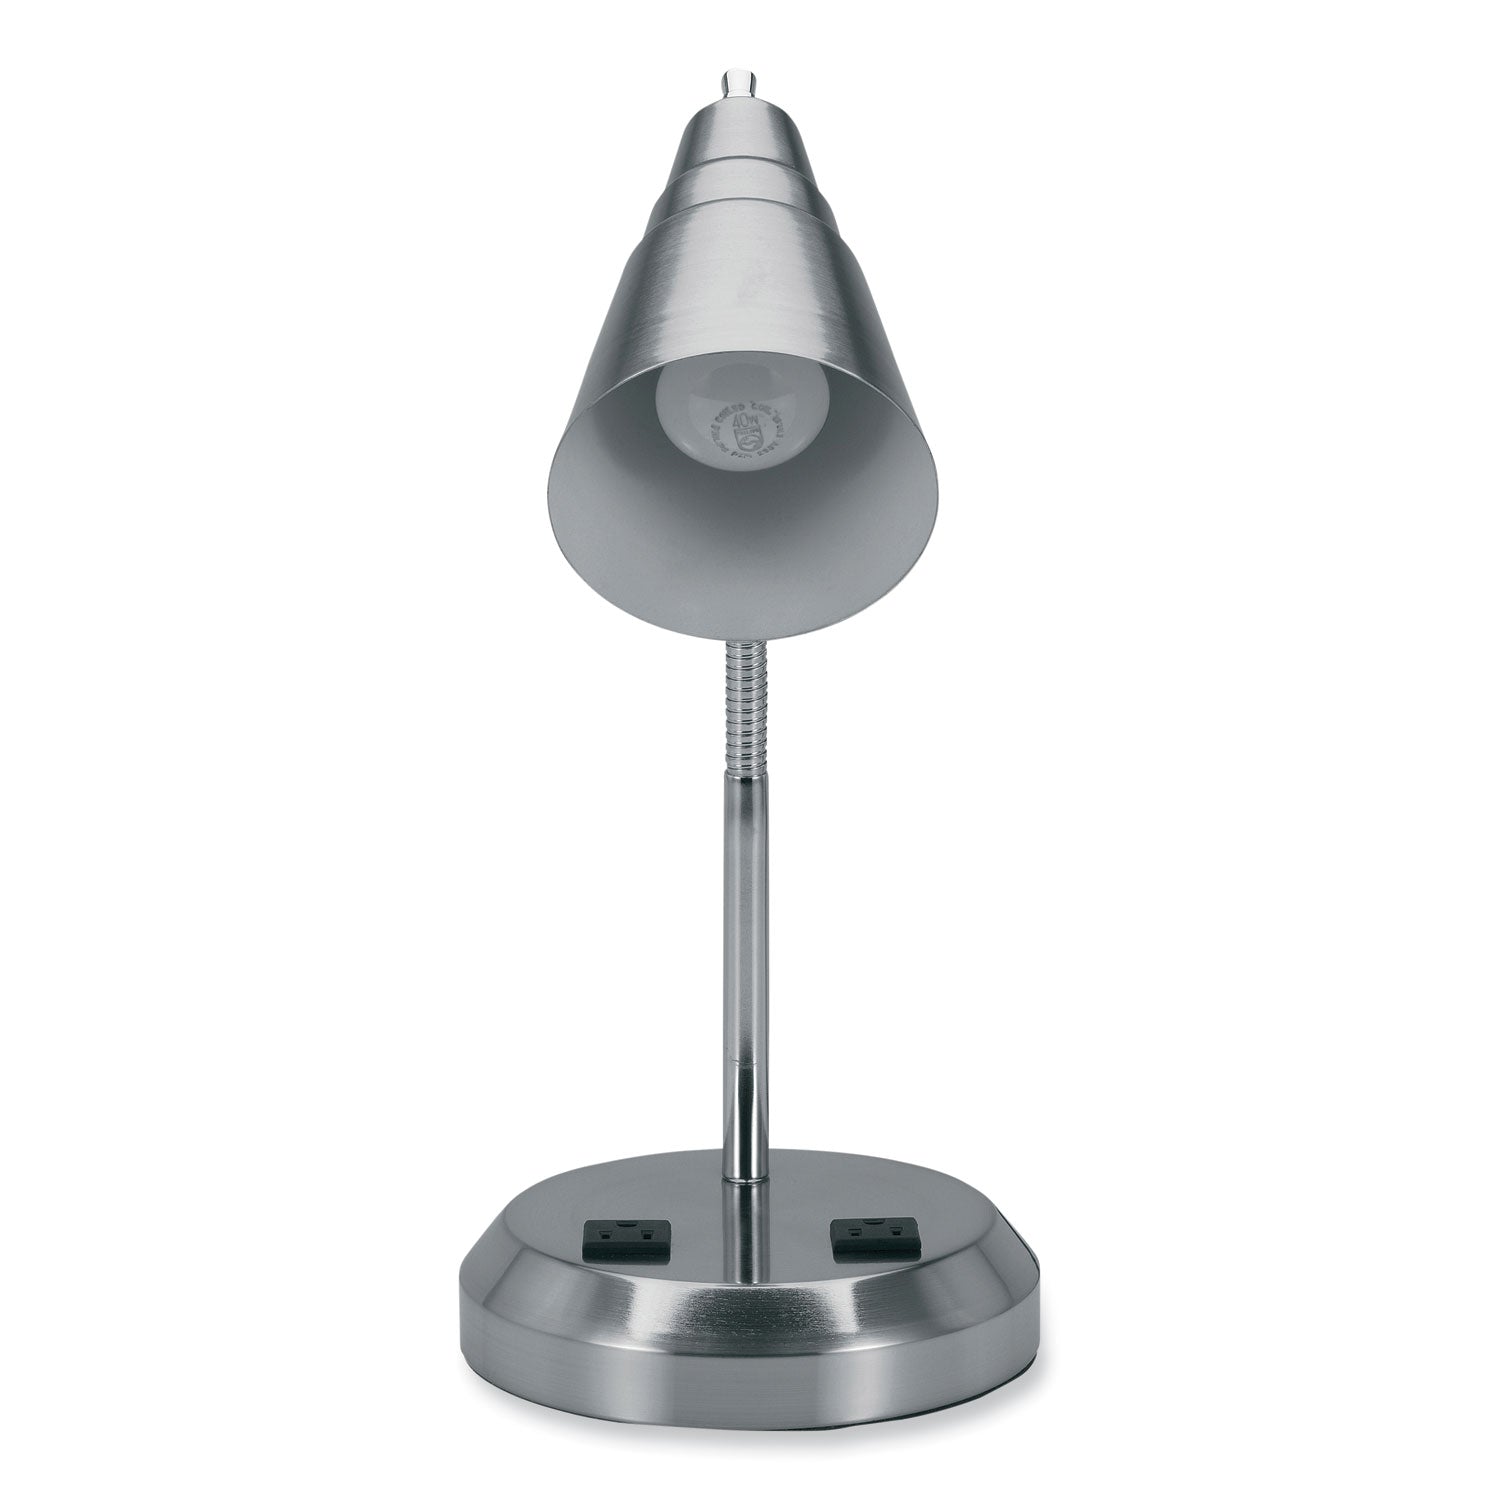 led-gooseneck-desk-lamp-with-charging-outlets-gooseneck15-high-brushed-steel-ships-in-4-6-business-days_vluvs20105bn - 2